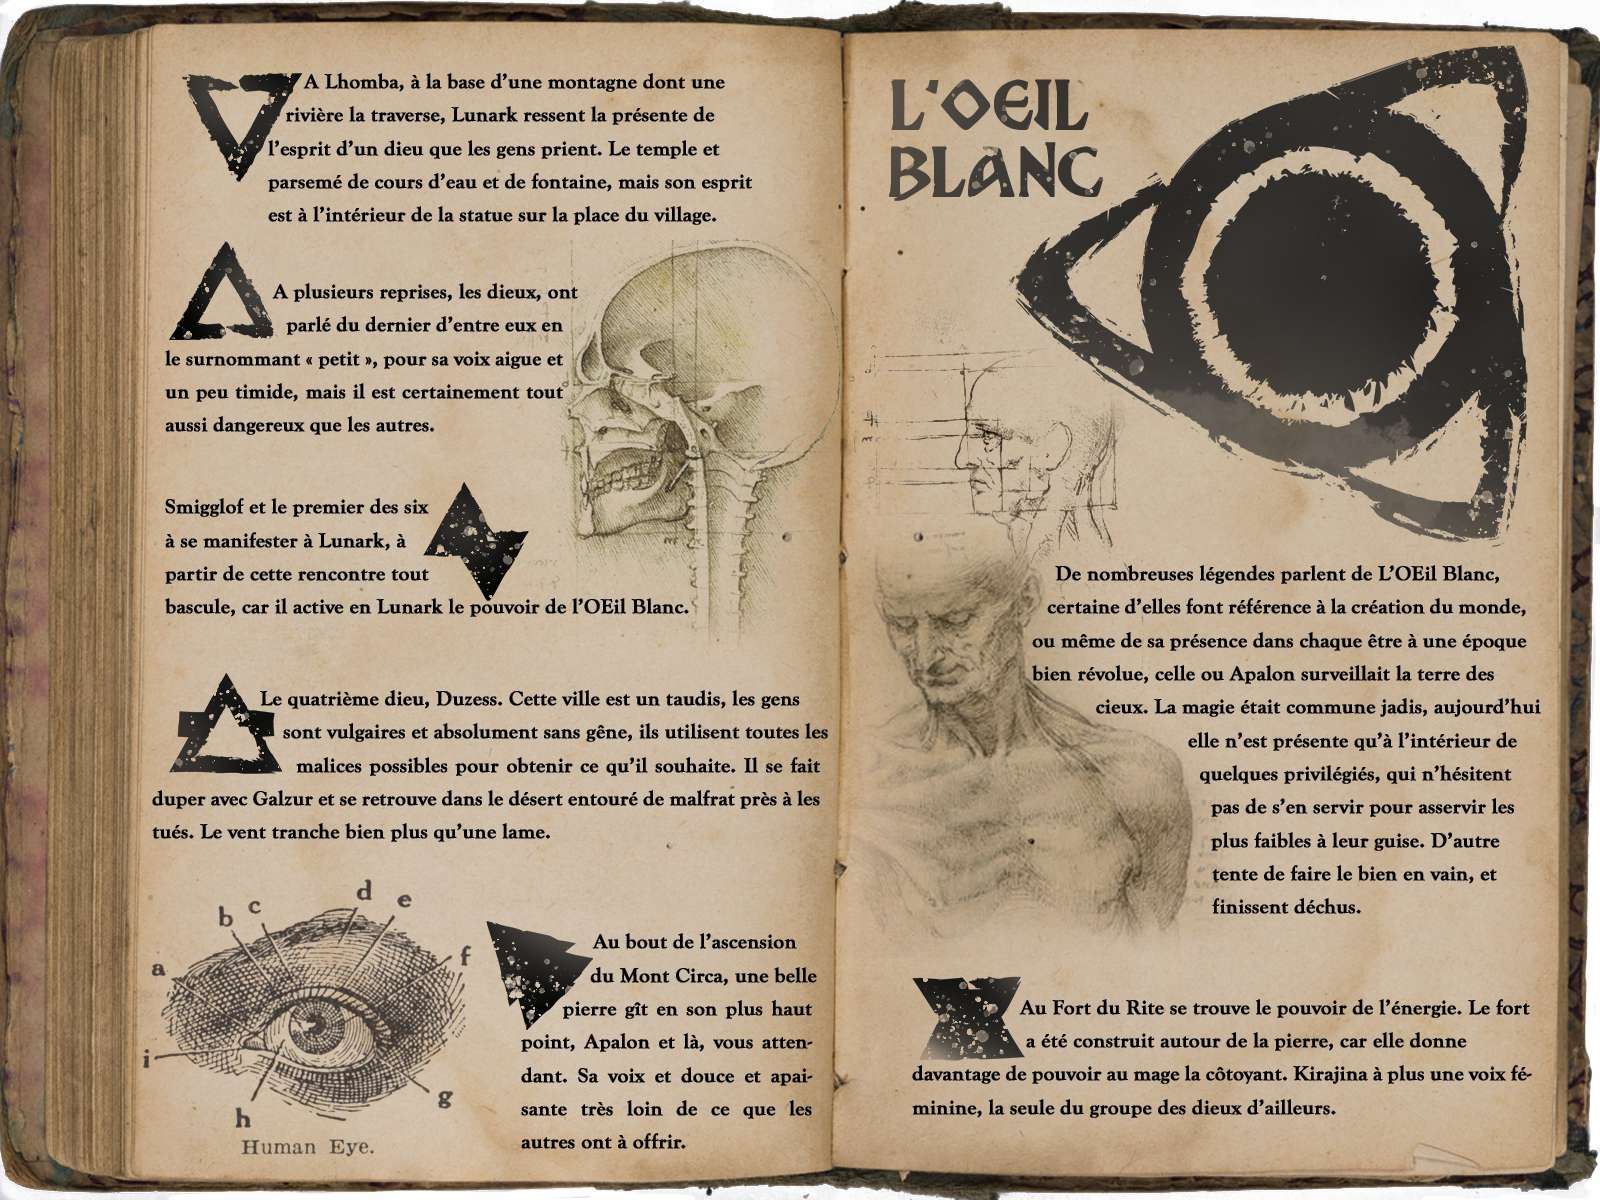 “L’Oeil Blanc”, le jeu vidéo adapté aux personnes malvoyantes